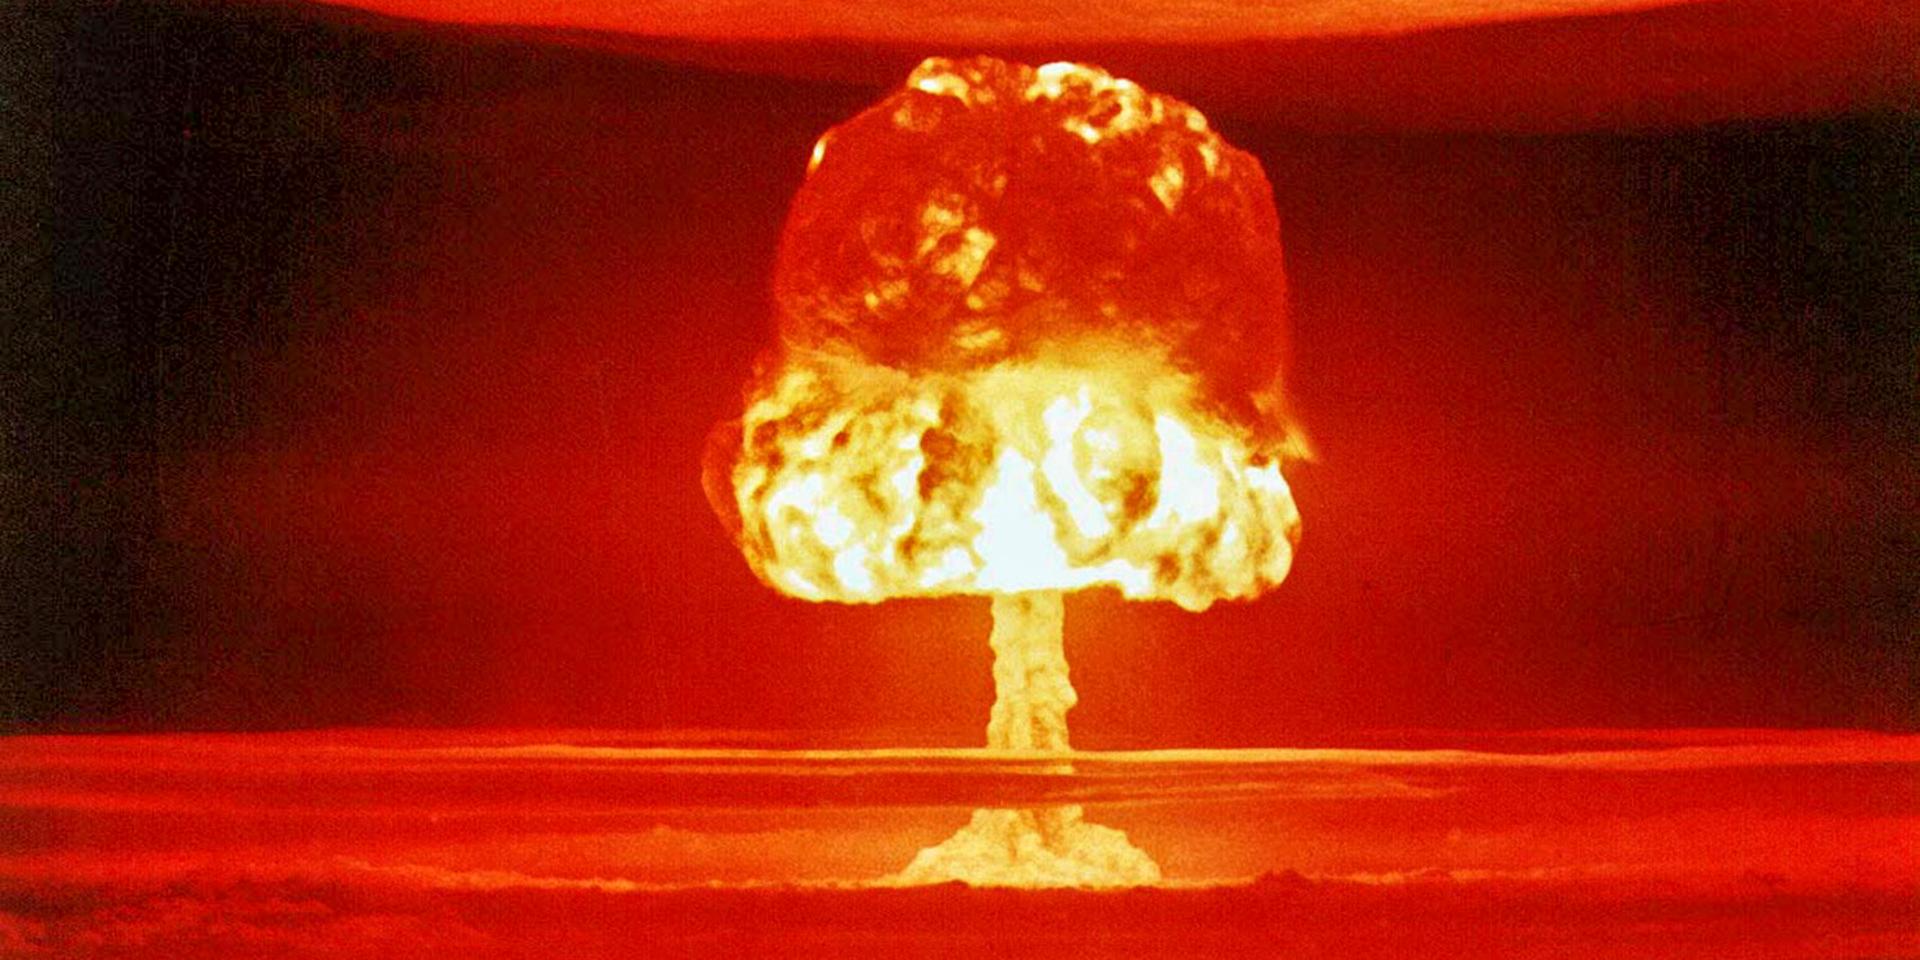 Atombomben var efterkrigsgenerationens stora skräck. En fara som nu fallit i glömska – trots att risken för krig är större än någonsin. 